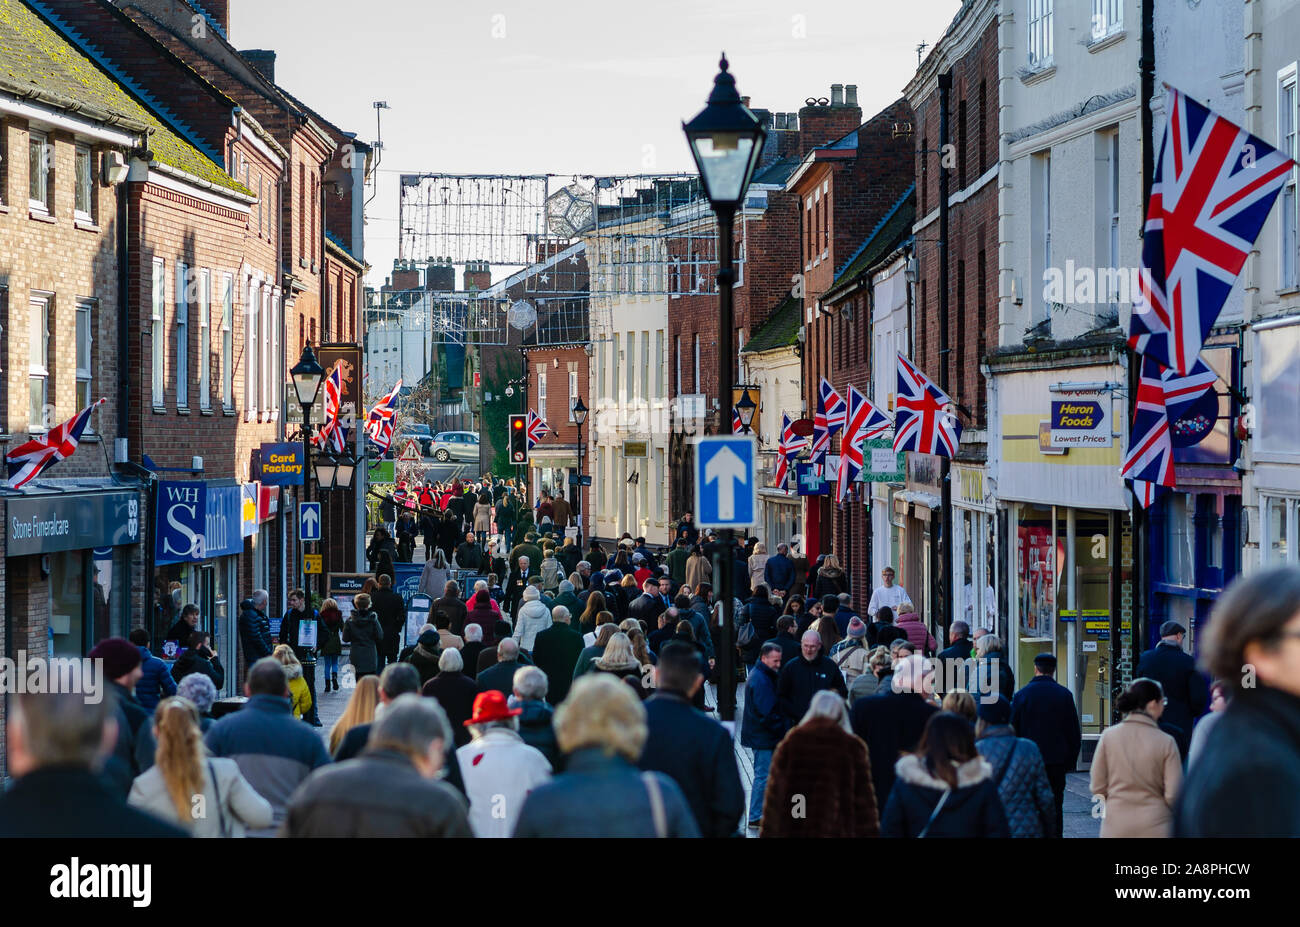 Foto einer gedrängten Straße in einem kleinen britischen Stadt nach der Erinnerung Tag der Parade in Stein, Staffordshire, Großbritannien. Stockfoto